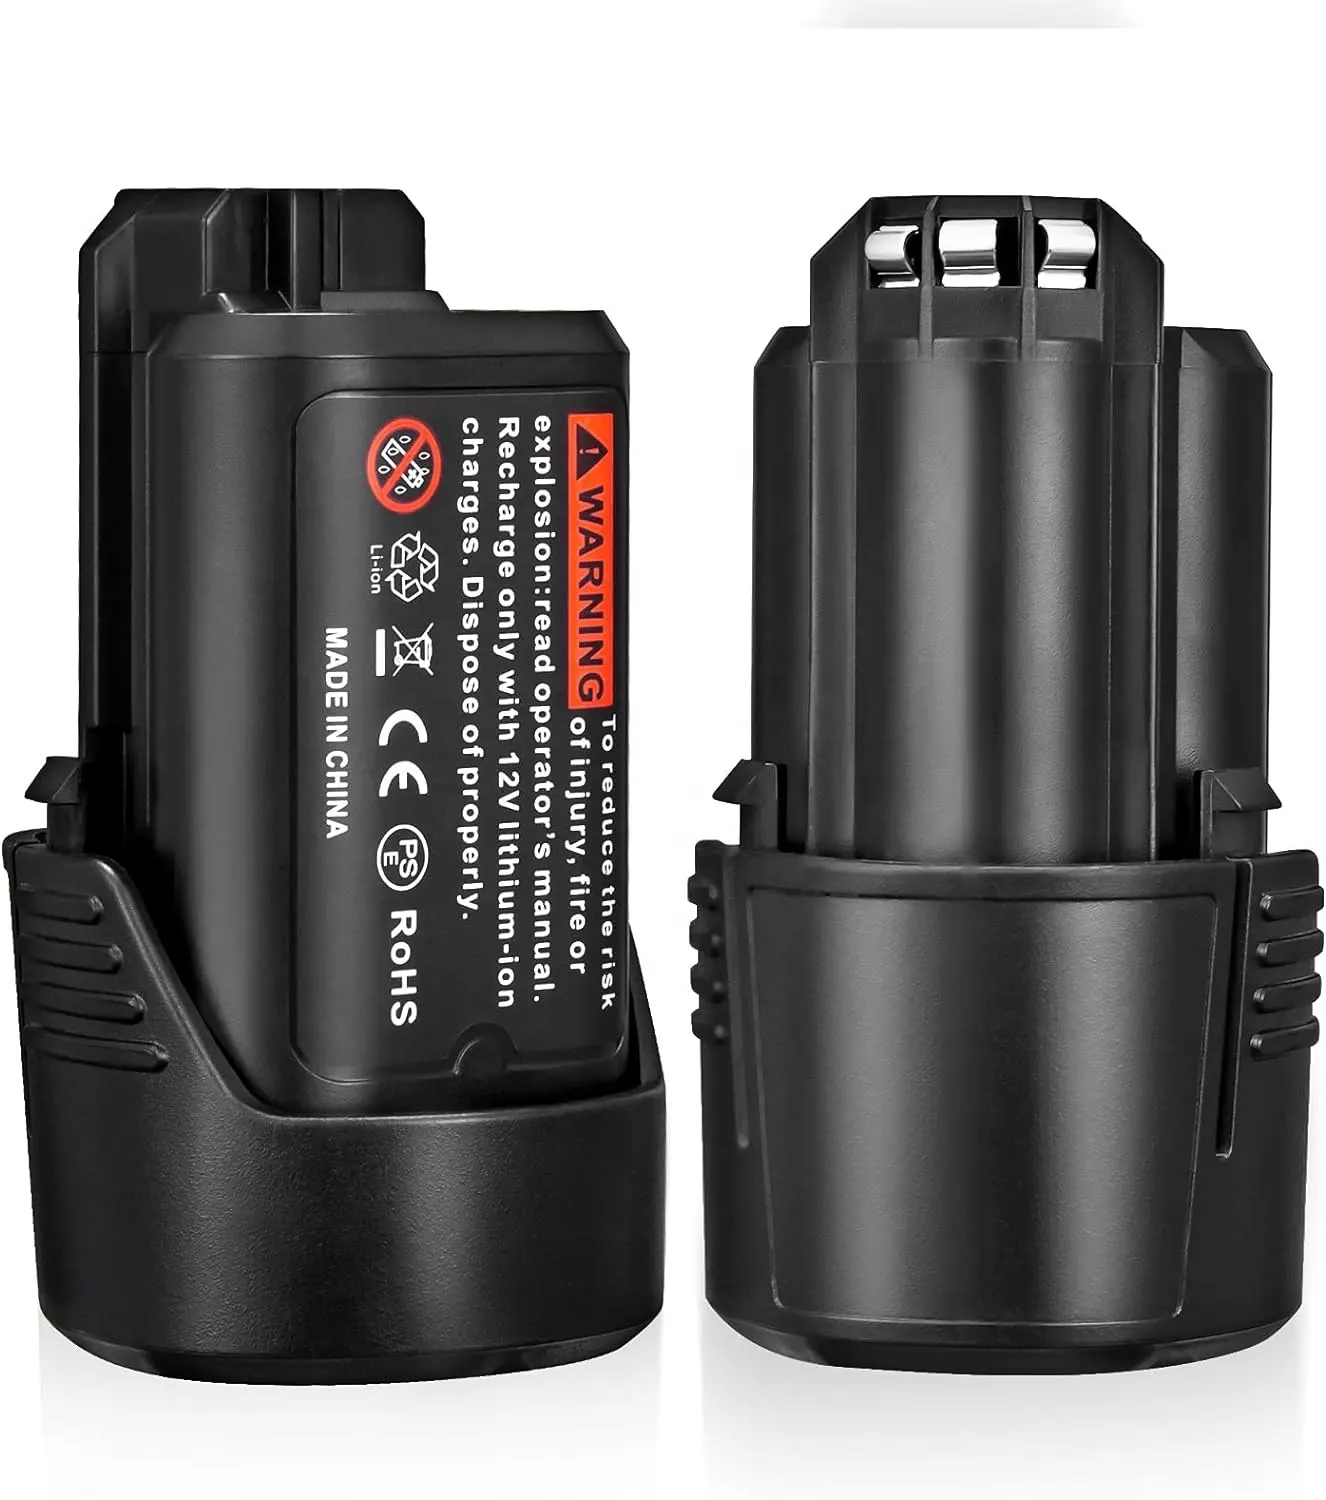 Usine 10.8V 12V batterie pour outil électrique BAT411 BAT414 2.0Ah batterie Li-ion pour outils sans fil Bosch BAT420 GBA12V60 batterie 12 volts